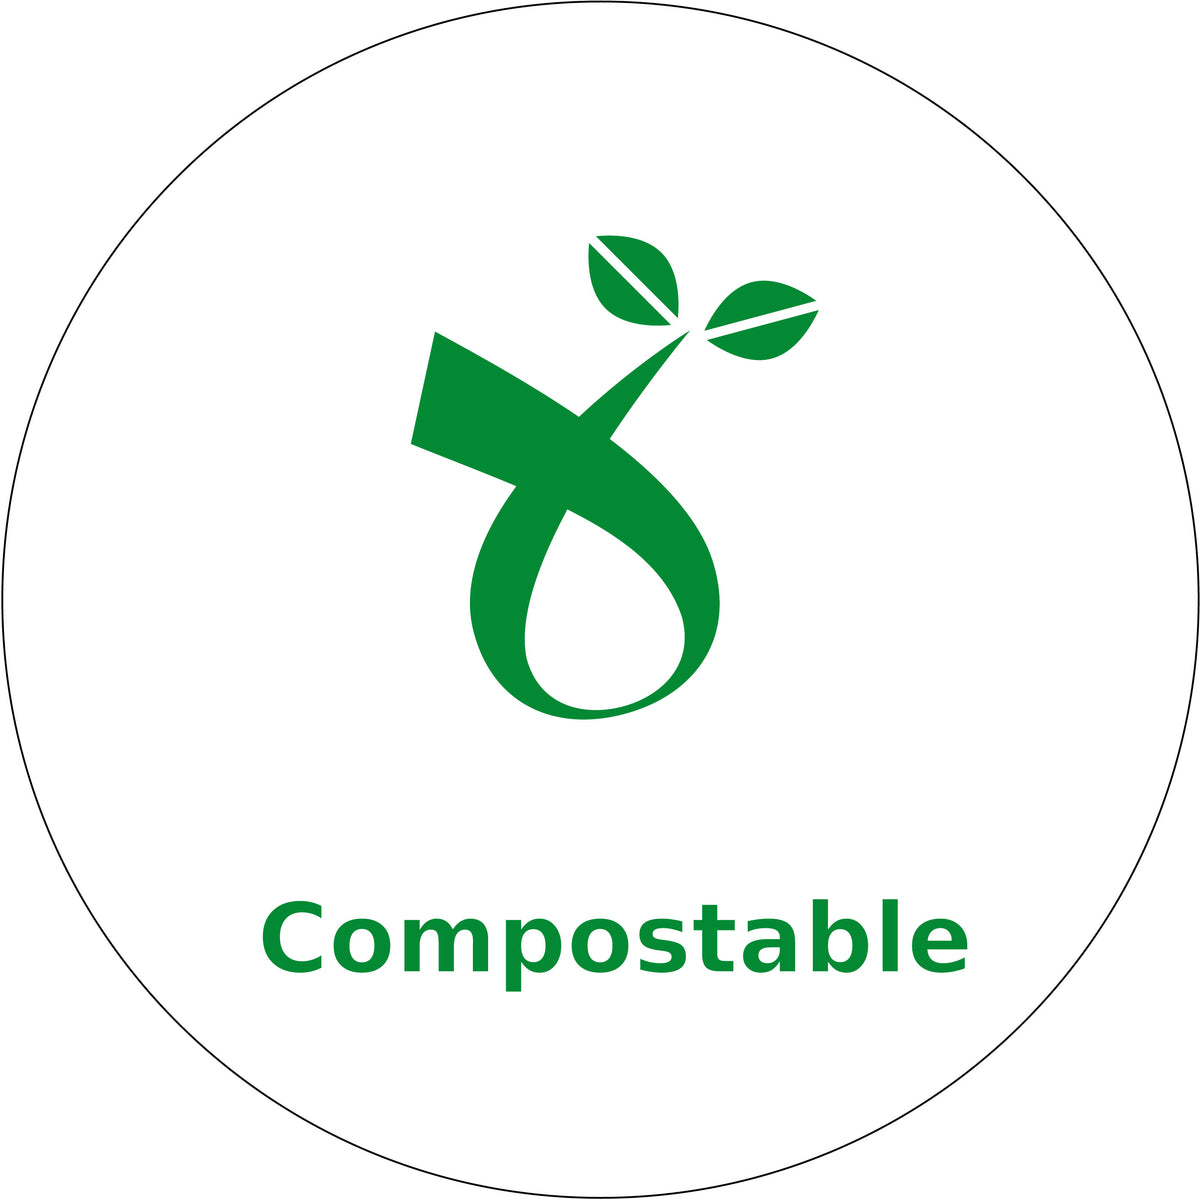 Green symbol for compostable materials. Allta